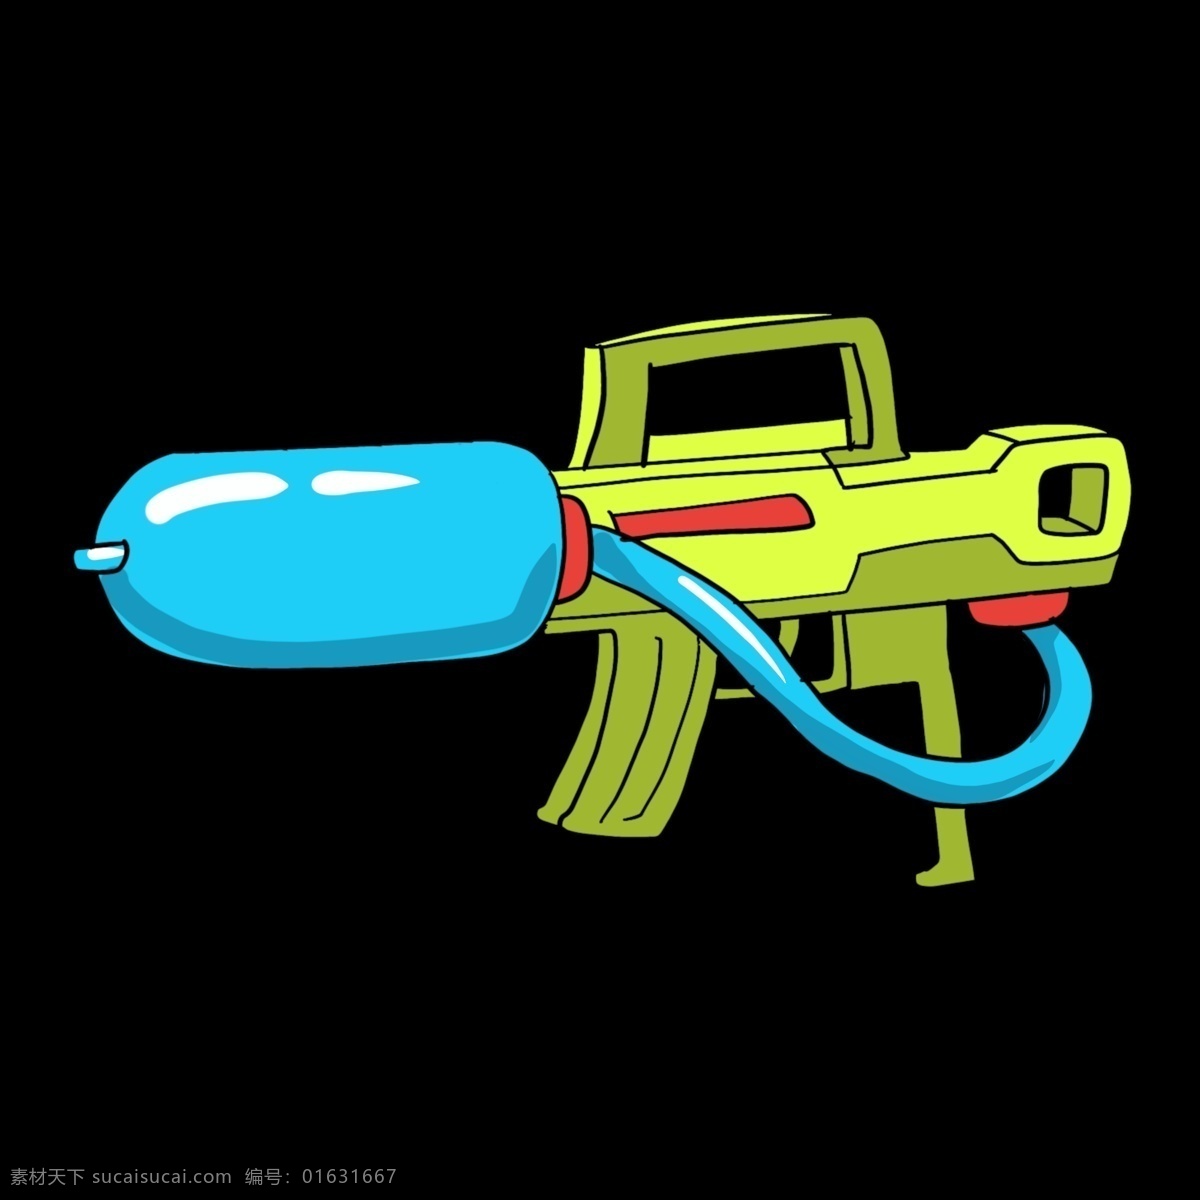 玩具 水枪 装饰 插画 玩具水枪 蓝色的水枪 漂亮的水枪 创意水枪 立体水枪 精美水枪 卡通水枪